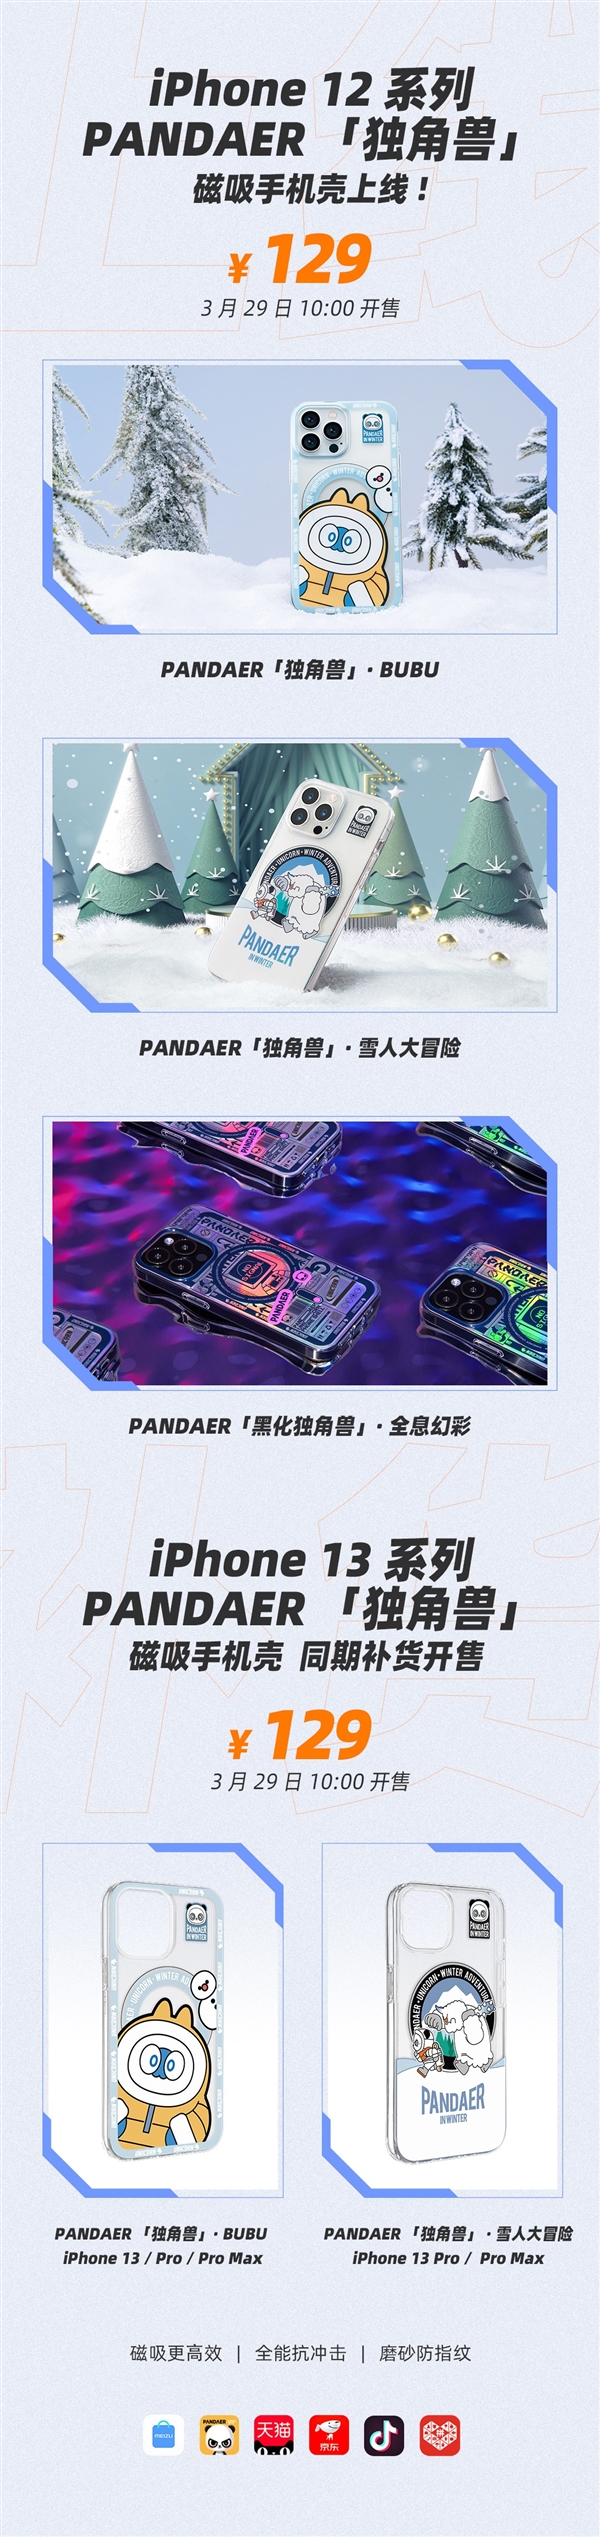 魅族pandaer独角兽磁吸手机壳明日开售